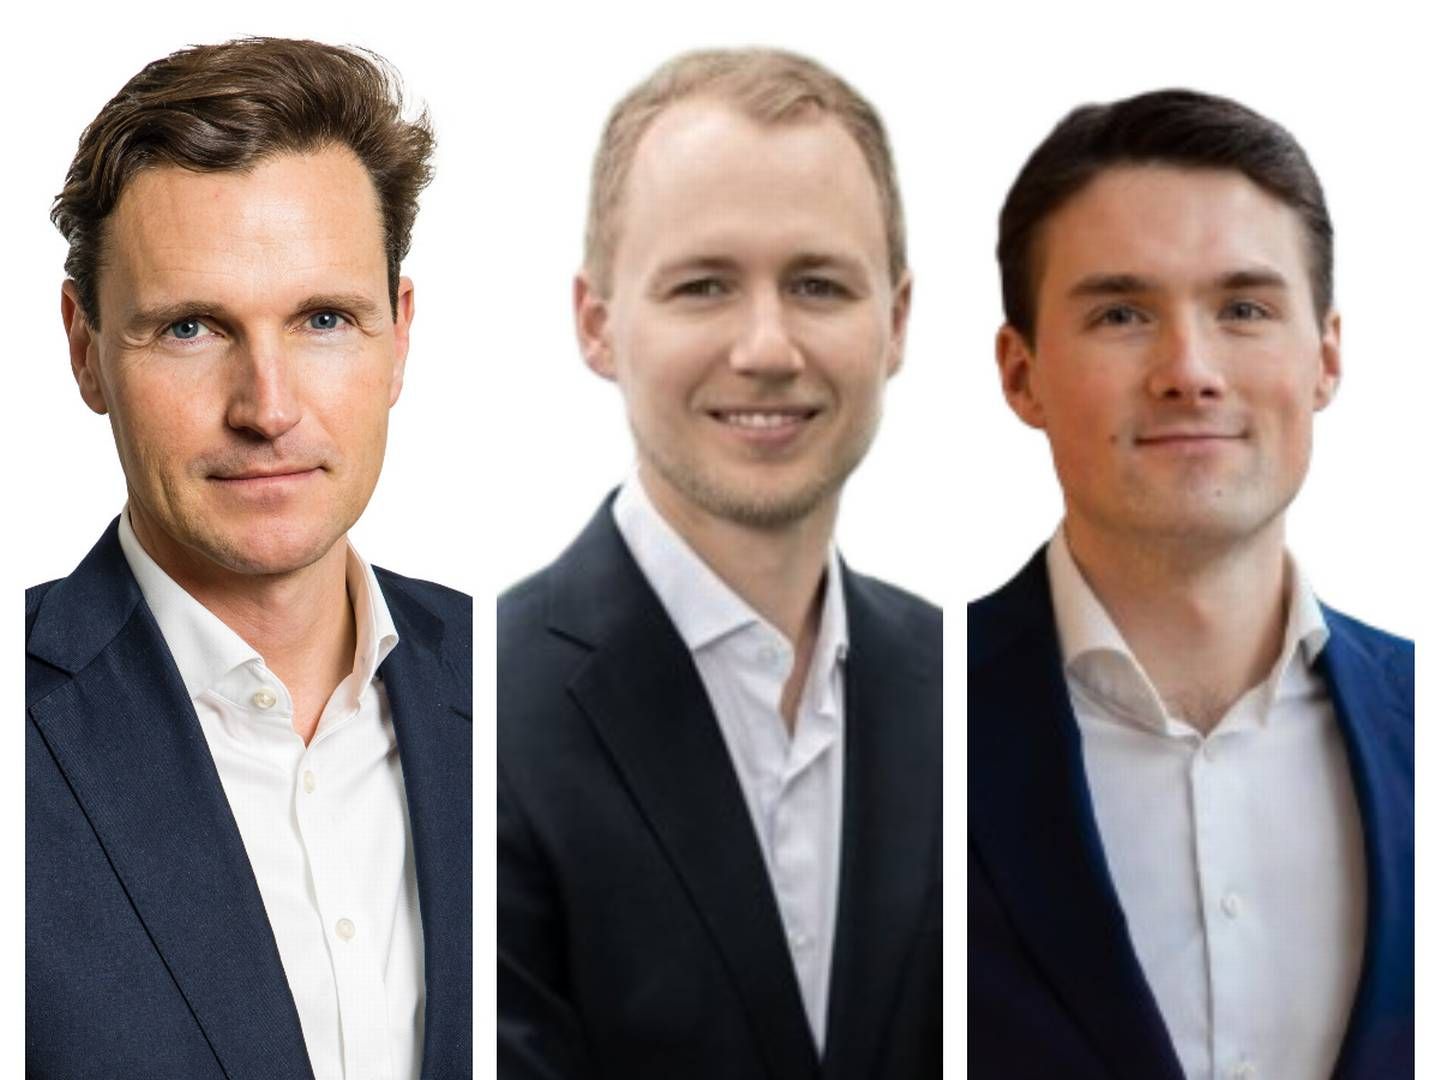 (L-R) Bernt Berg-Nielsen, Stolt Kapitalforvaltning, Ivar Harstveit and Erik Berg-Johnsen, Delphi Funds.